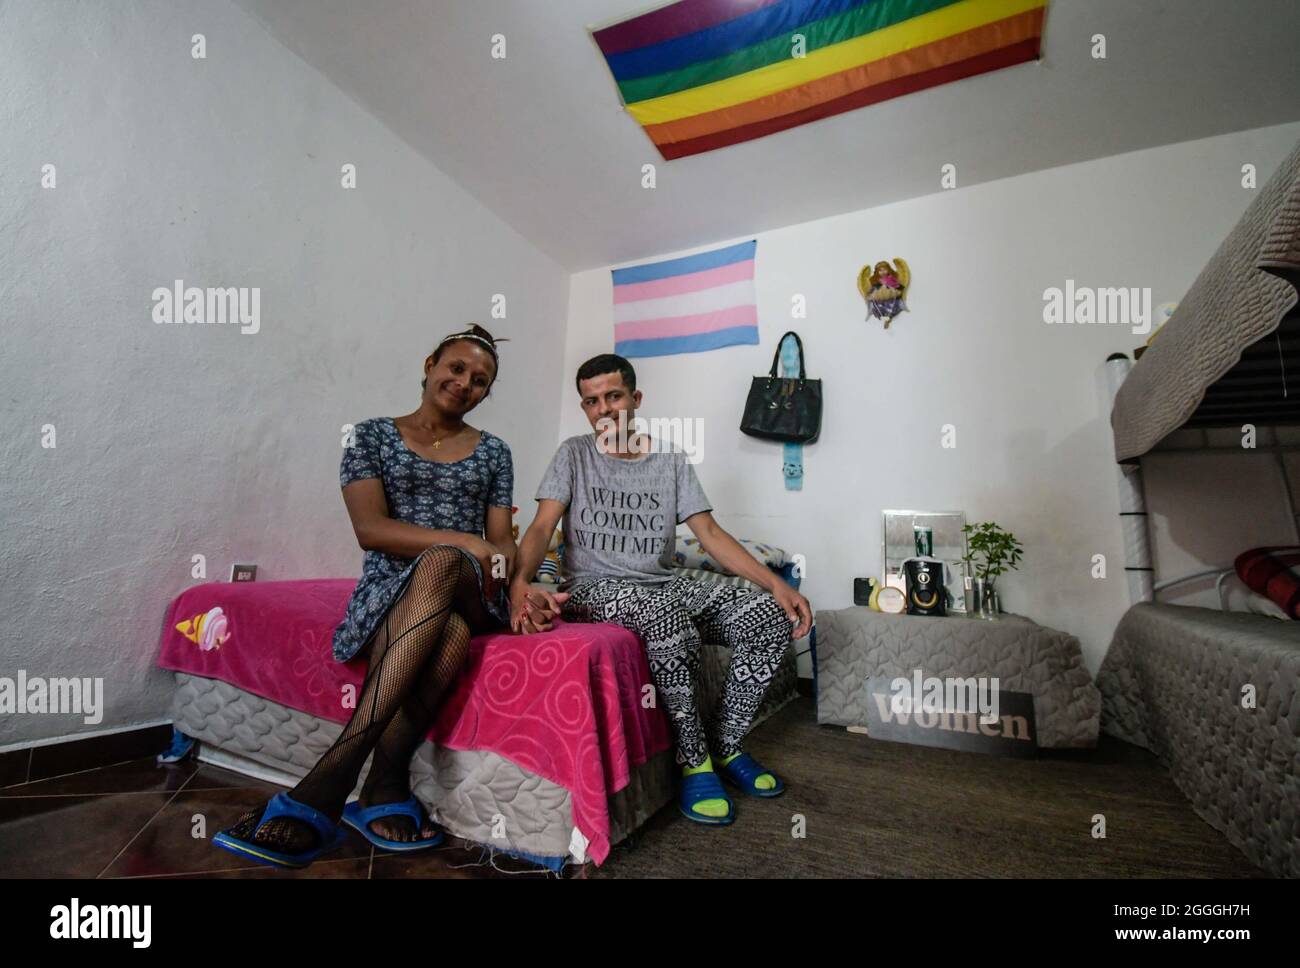 Nicht exklusiv: Migranten Transgender-Paar aus Honduras Alejandra und David, die aufgrund von Gewalt gegen die LGBTIQ communi aus ihrem Heimatland geflohen sind Stockfoto